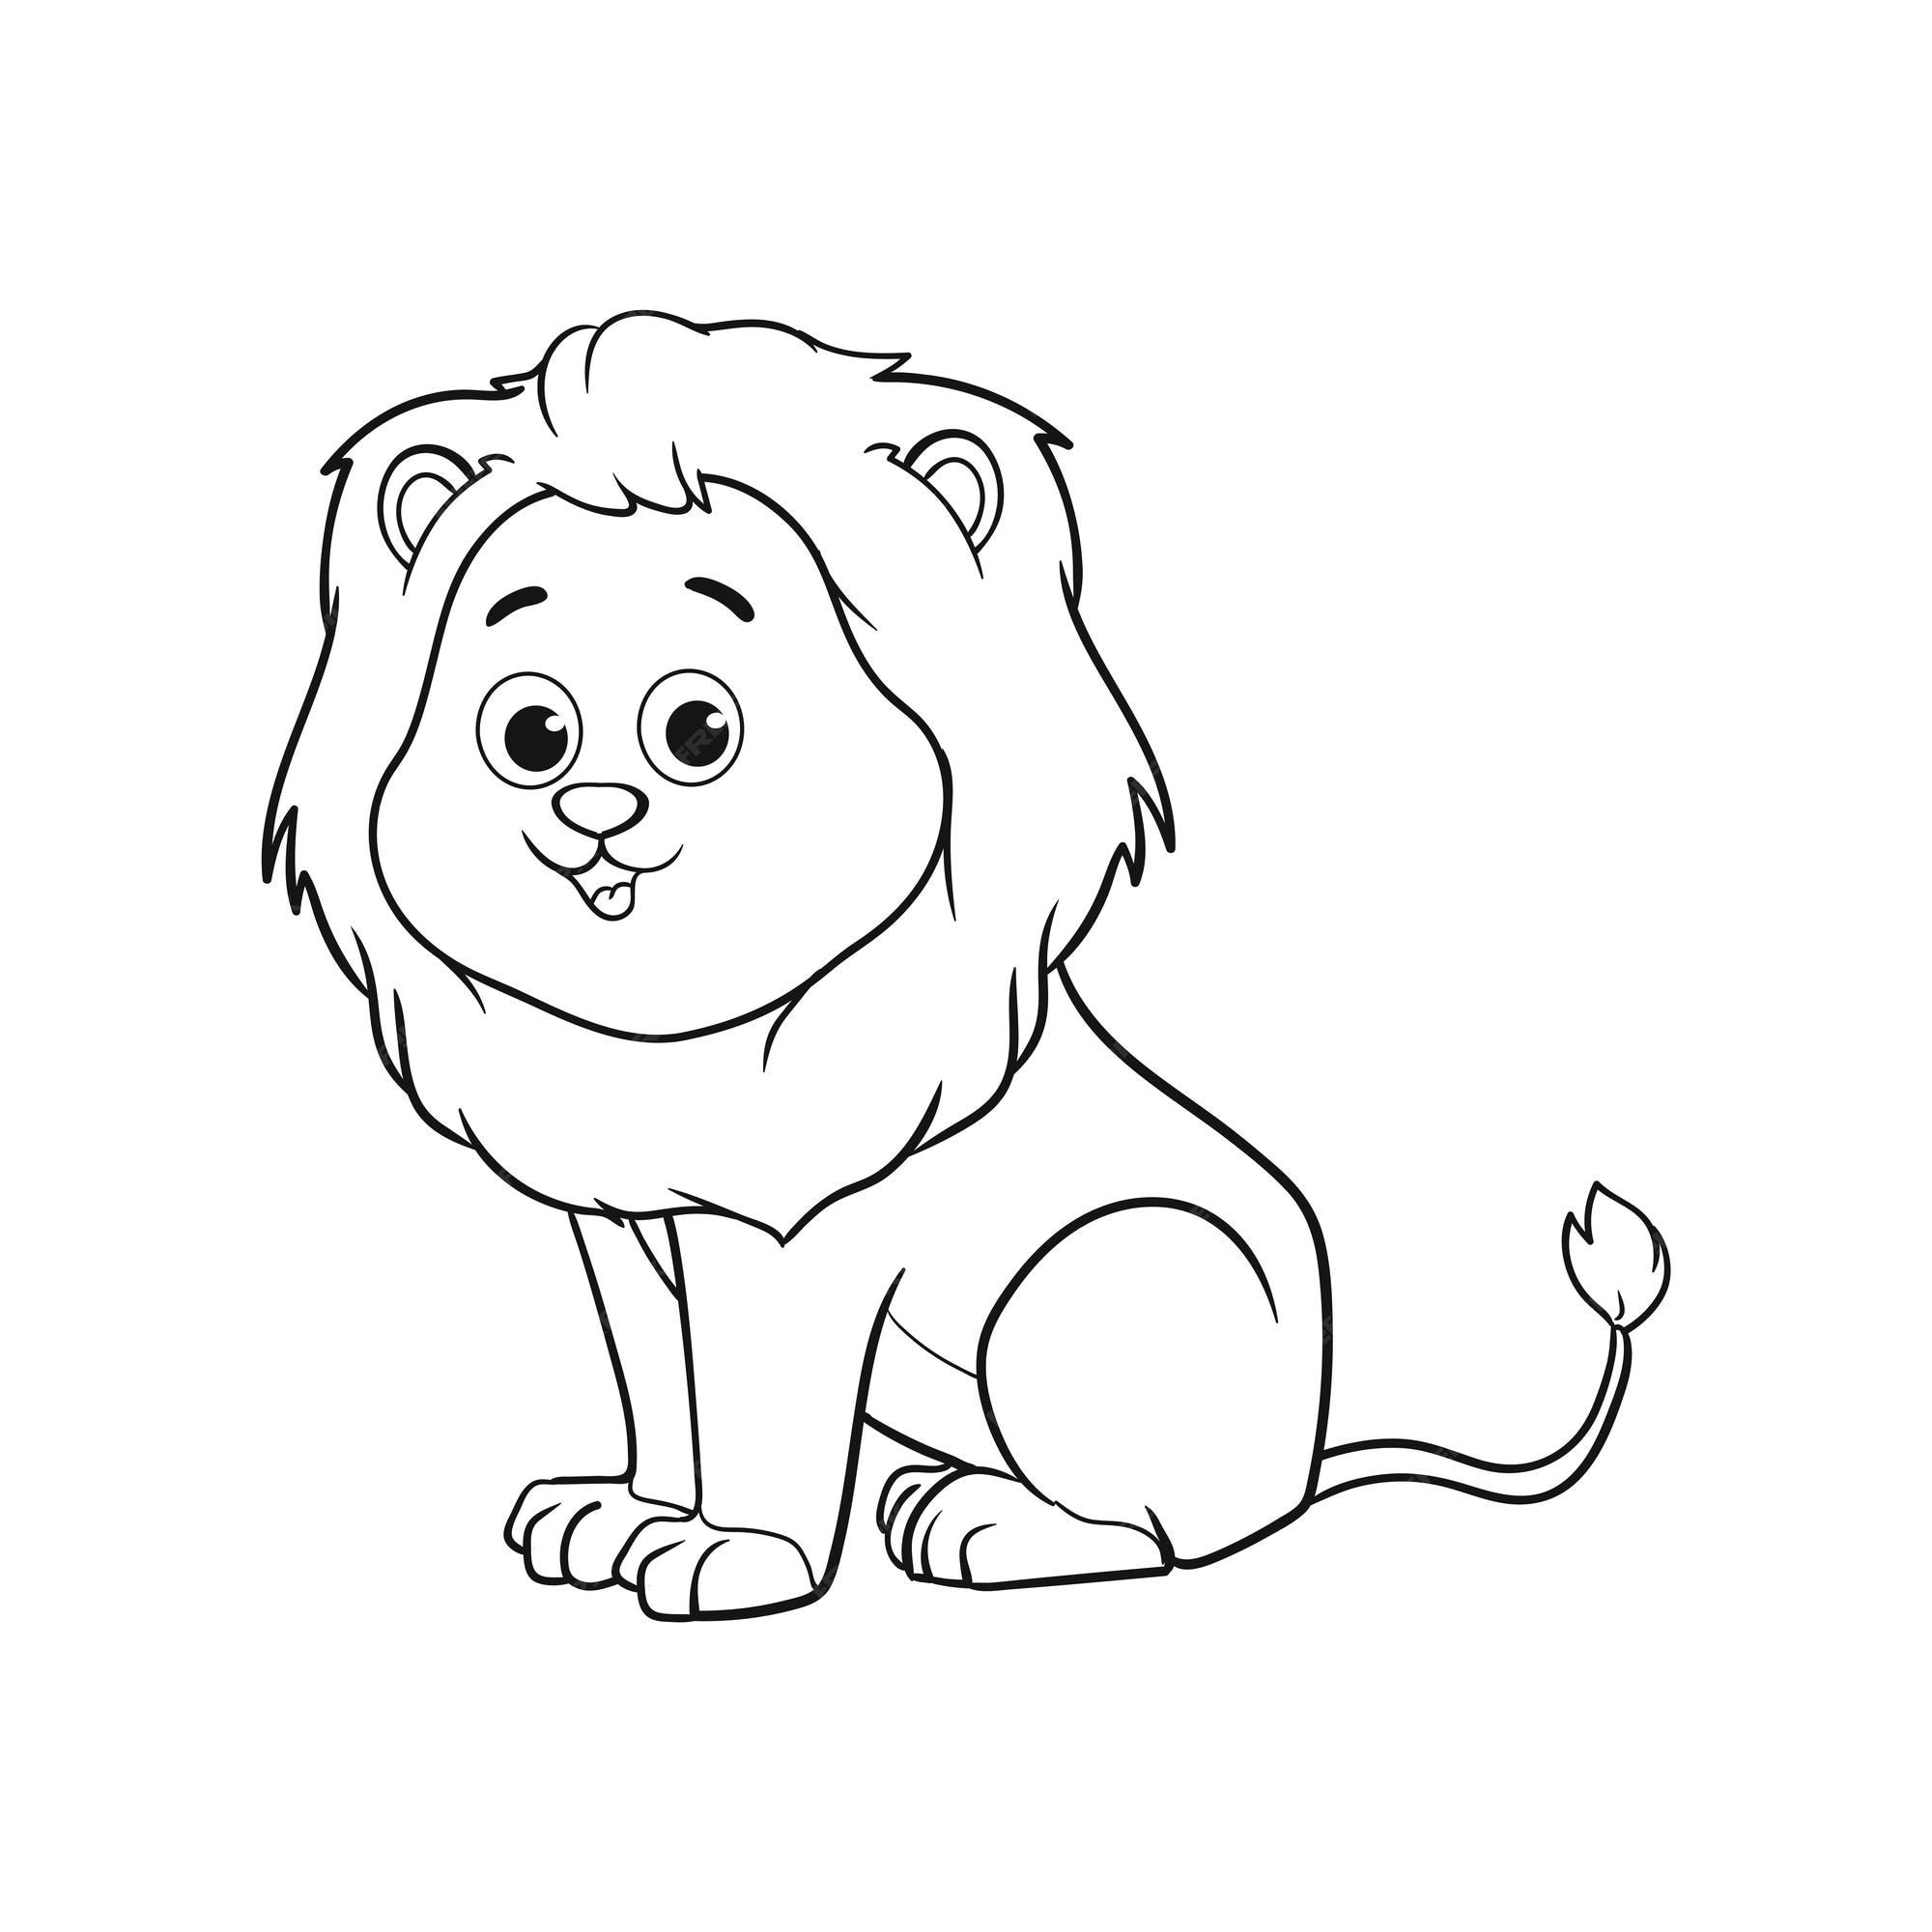 Leão de pelúcia - jogo para crianças, livro para colorir, ilustração